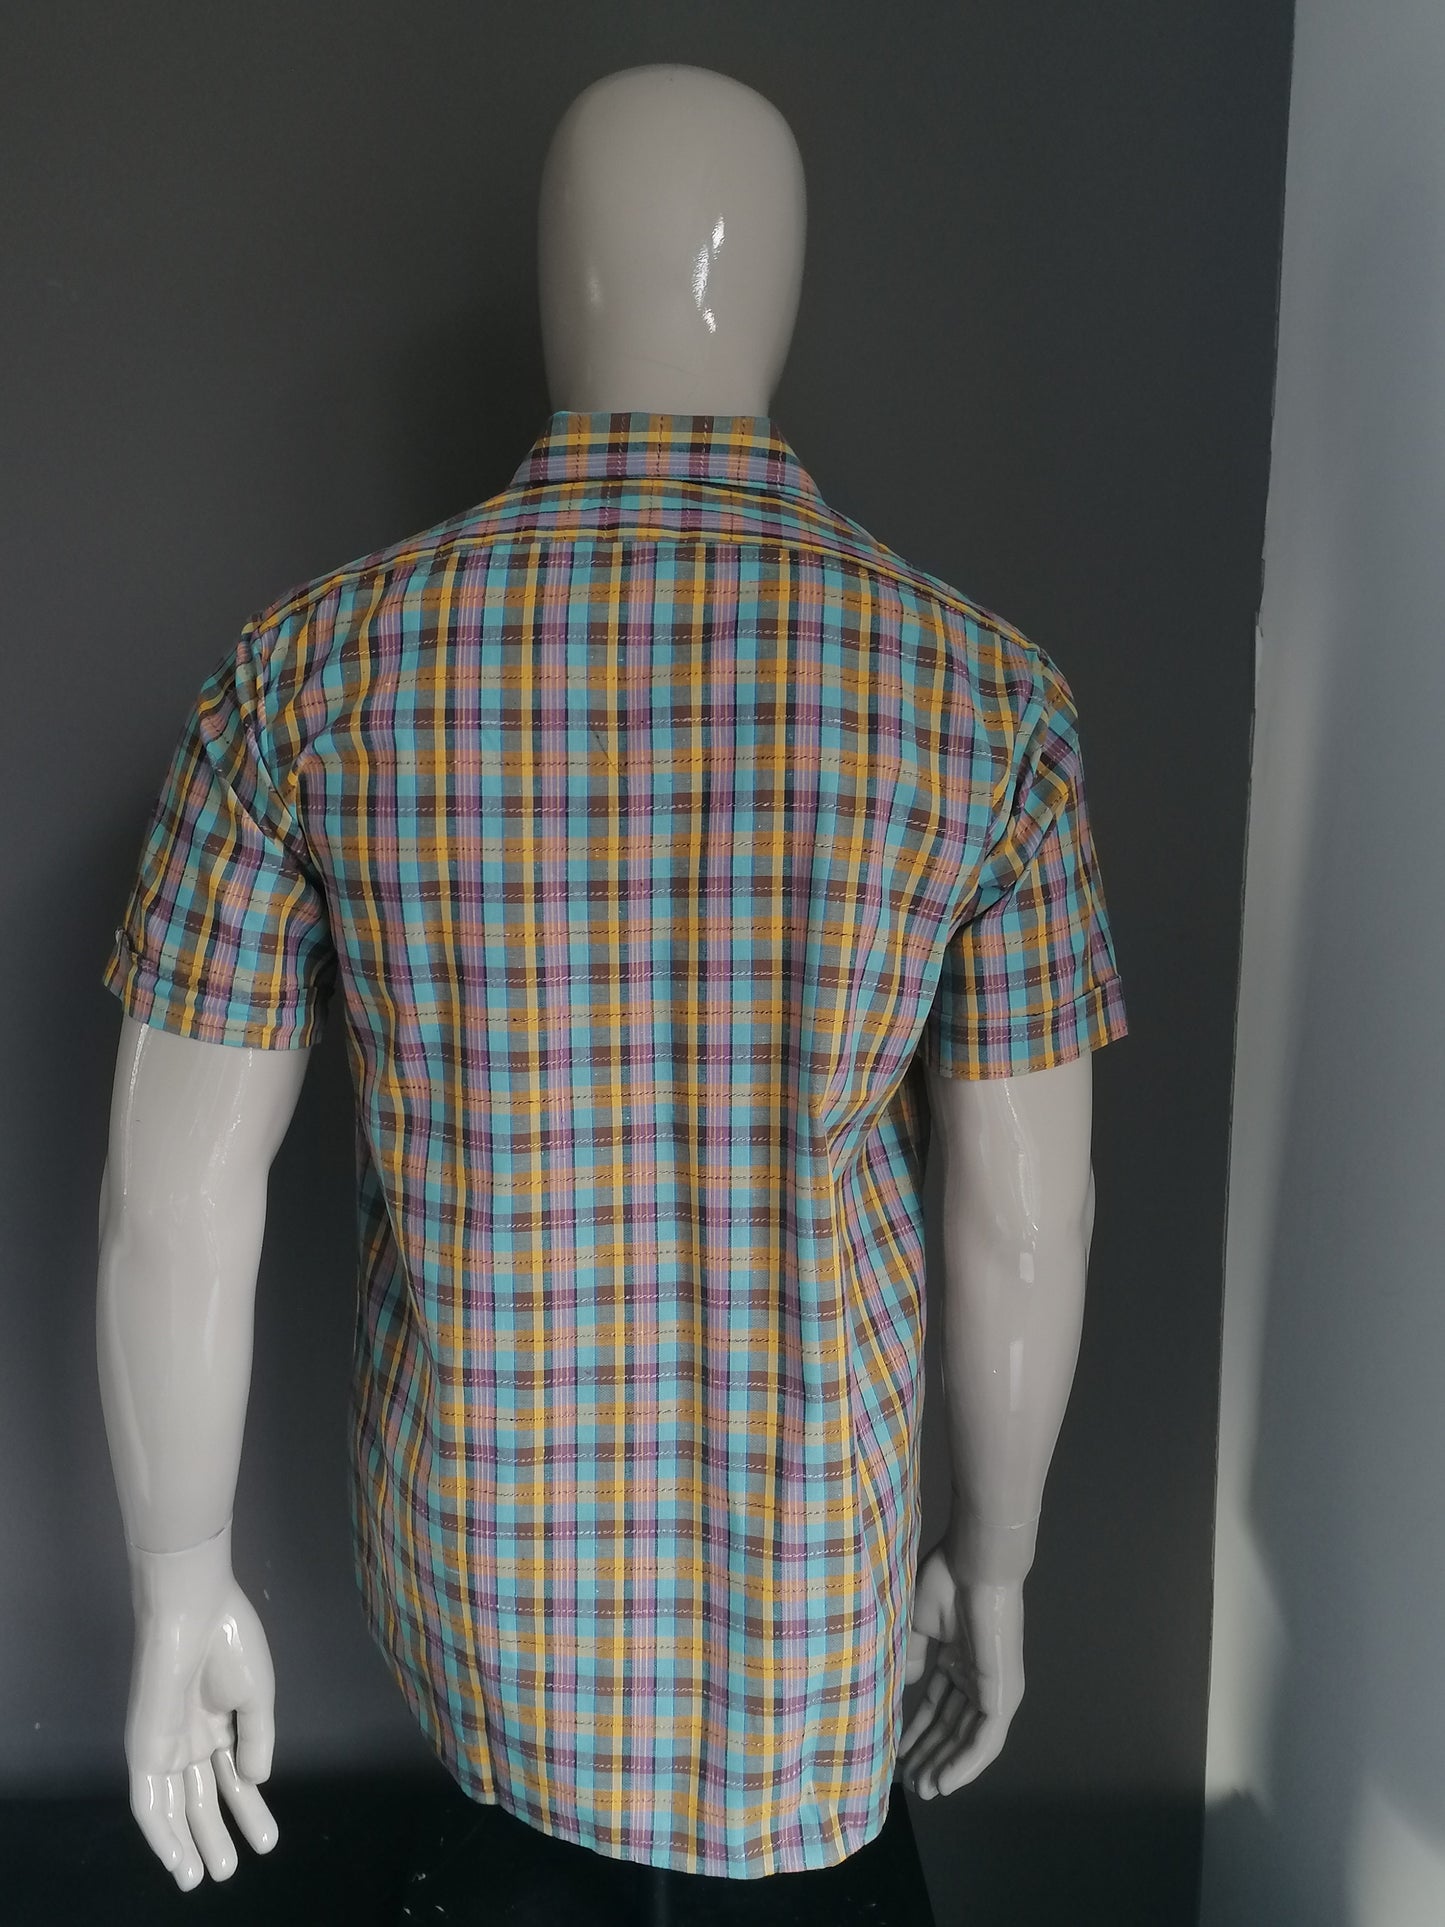 Vintage 70's overhemd korte mouw. Puntkraag. Blauw Geel Roze. Maat L.